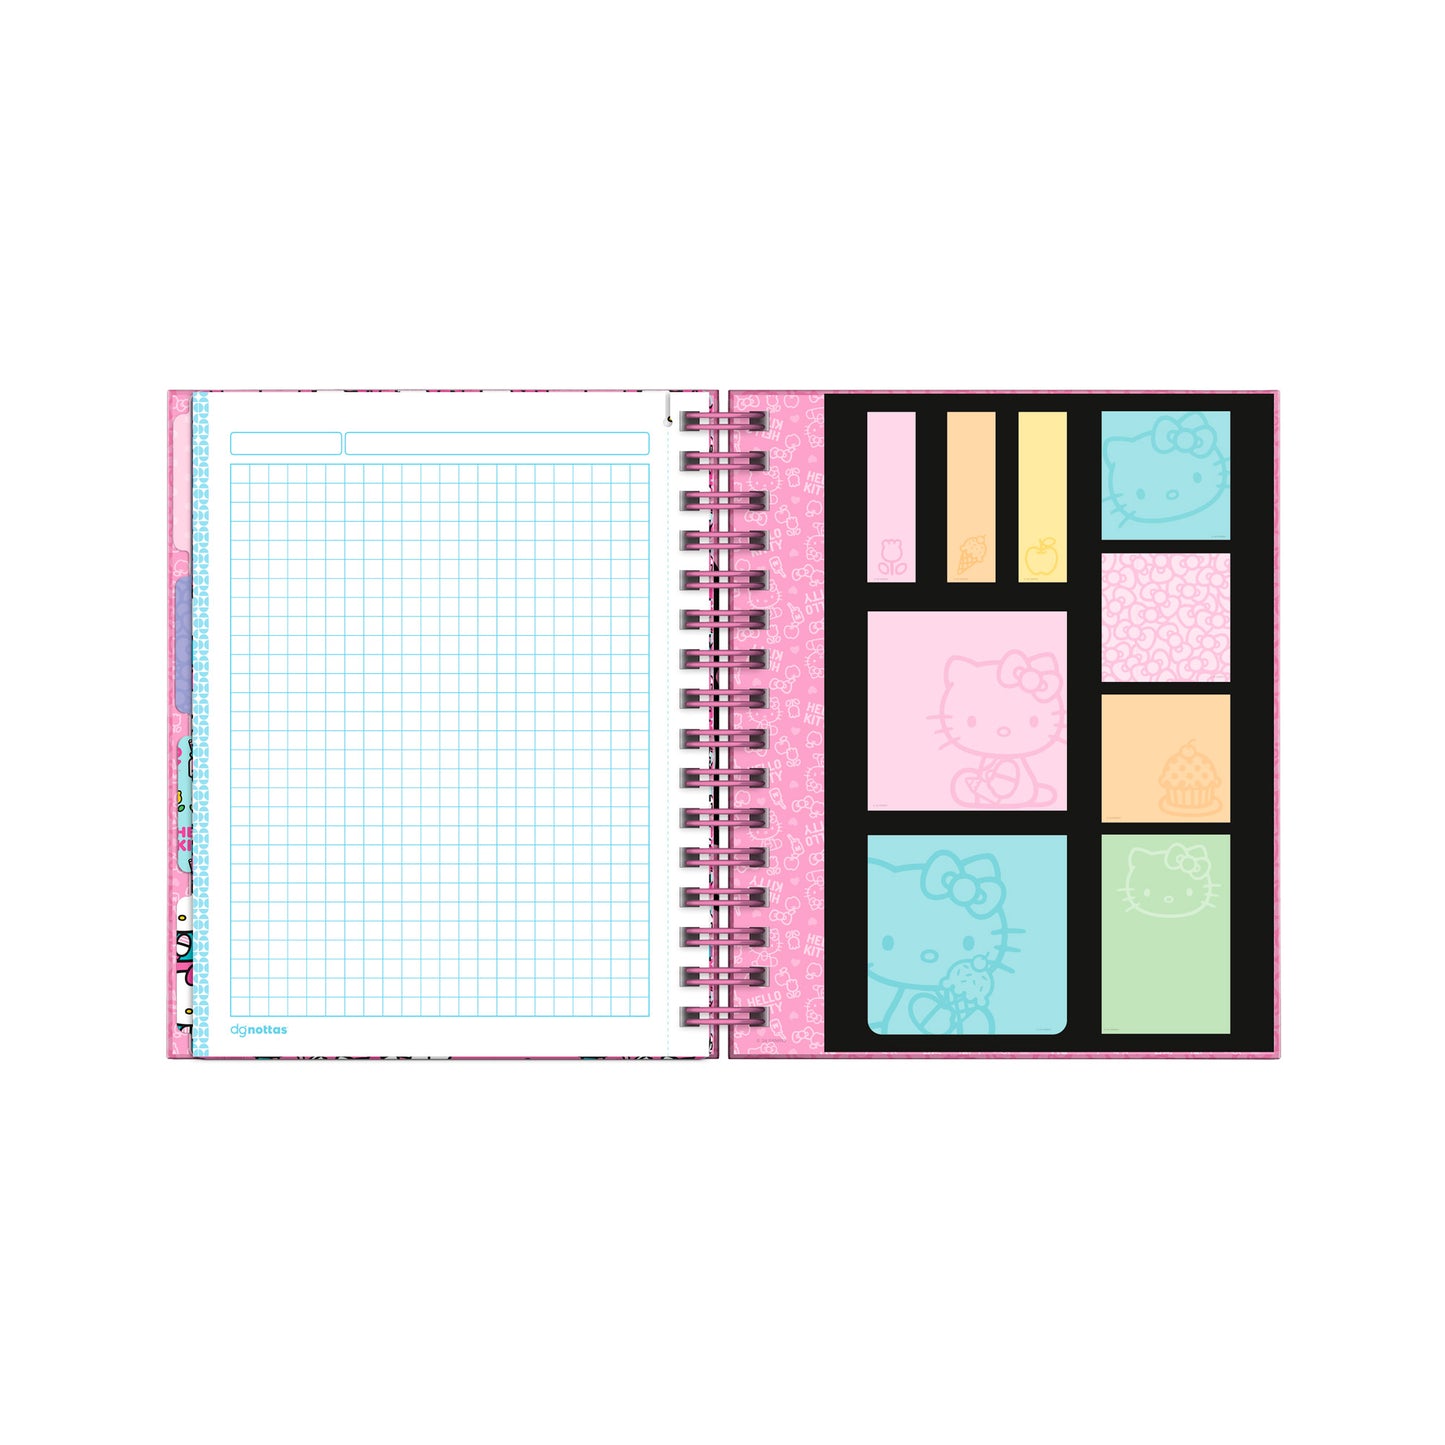 Cuaderno A5 Hello Kitty rosado claro